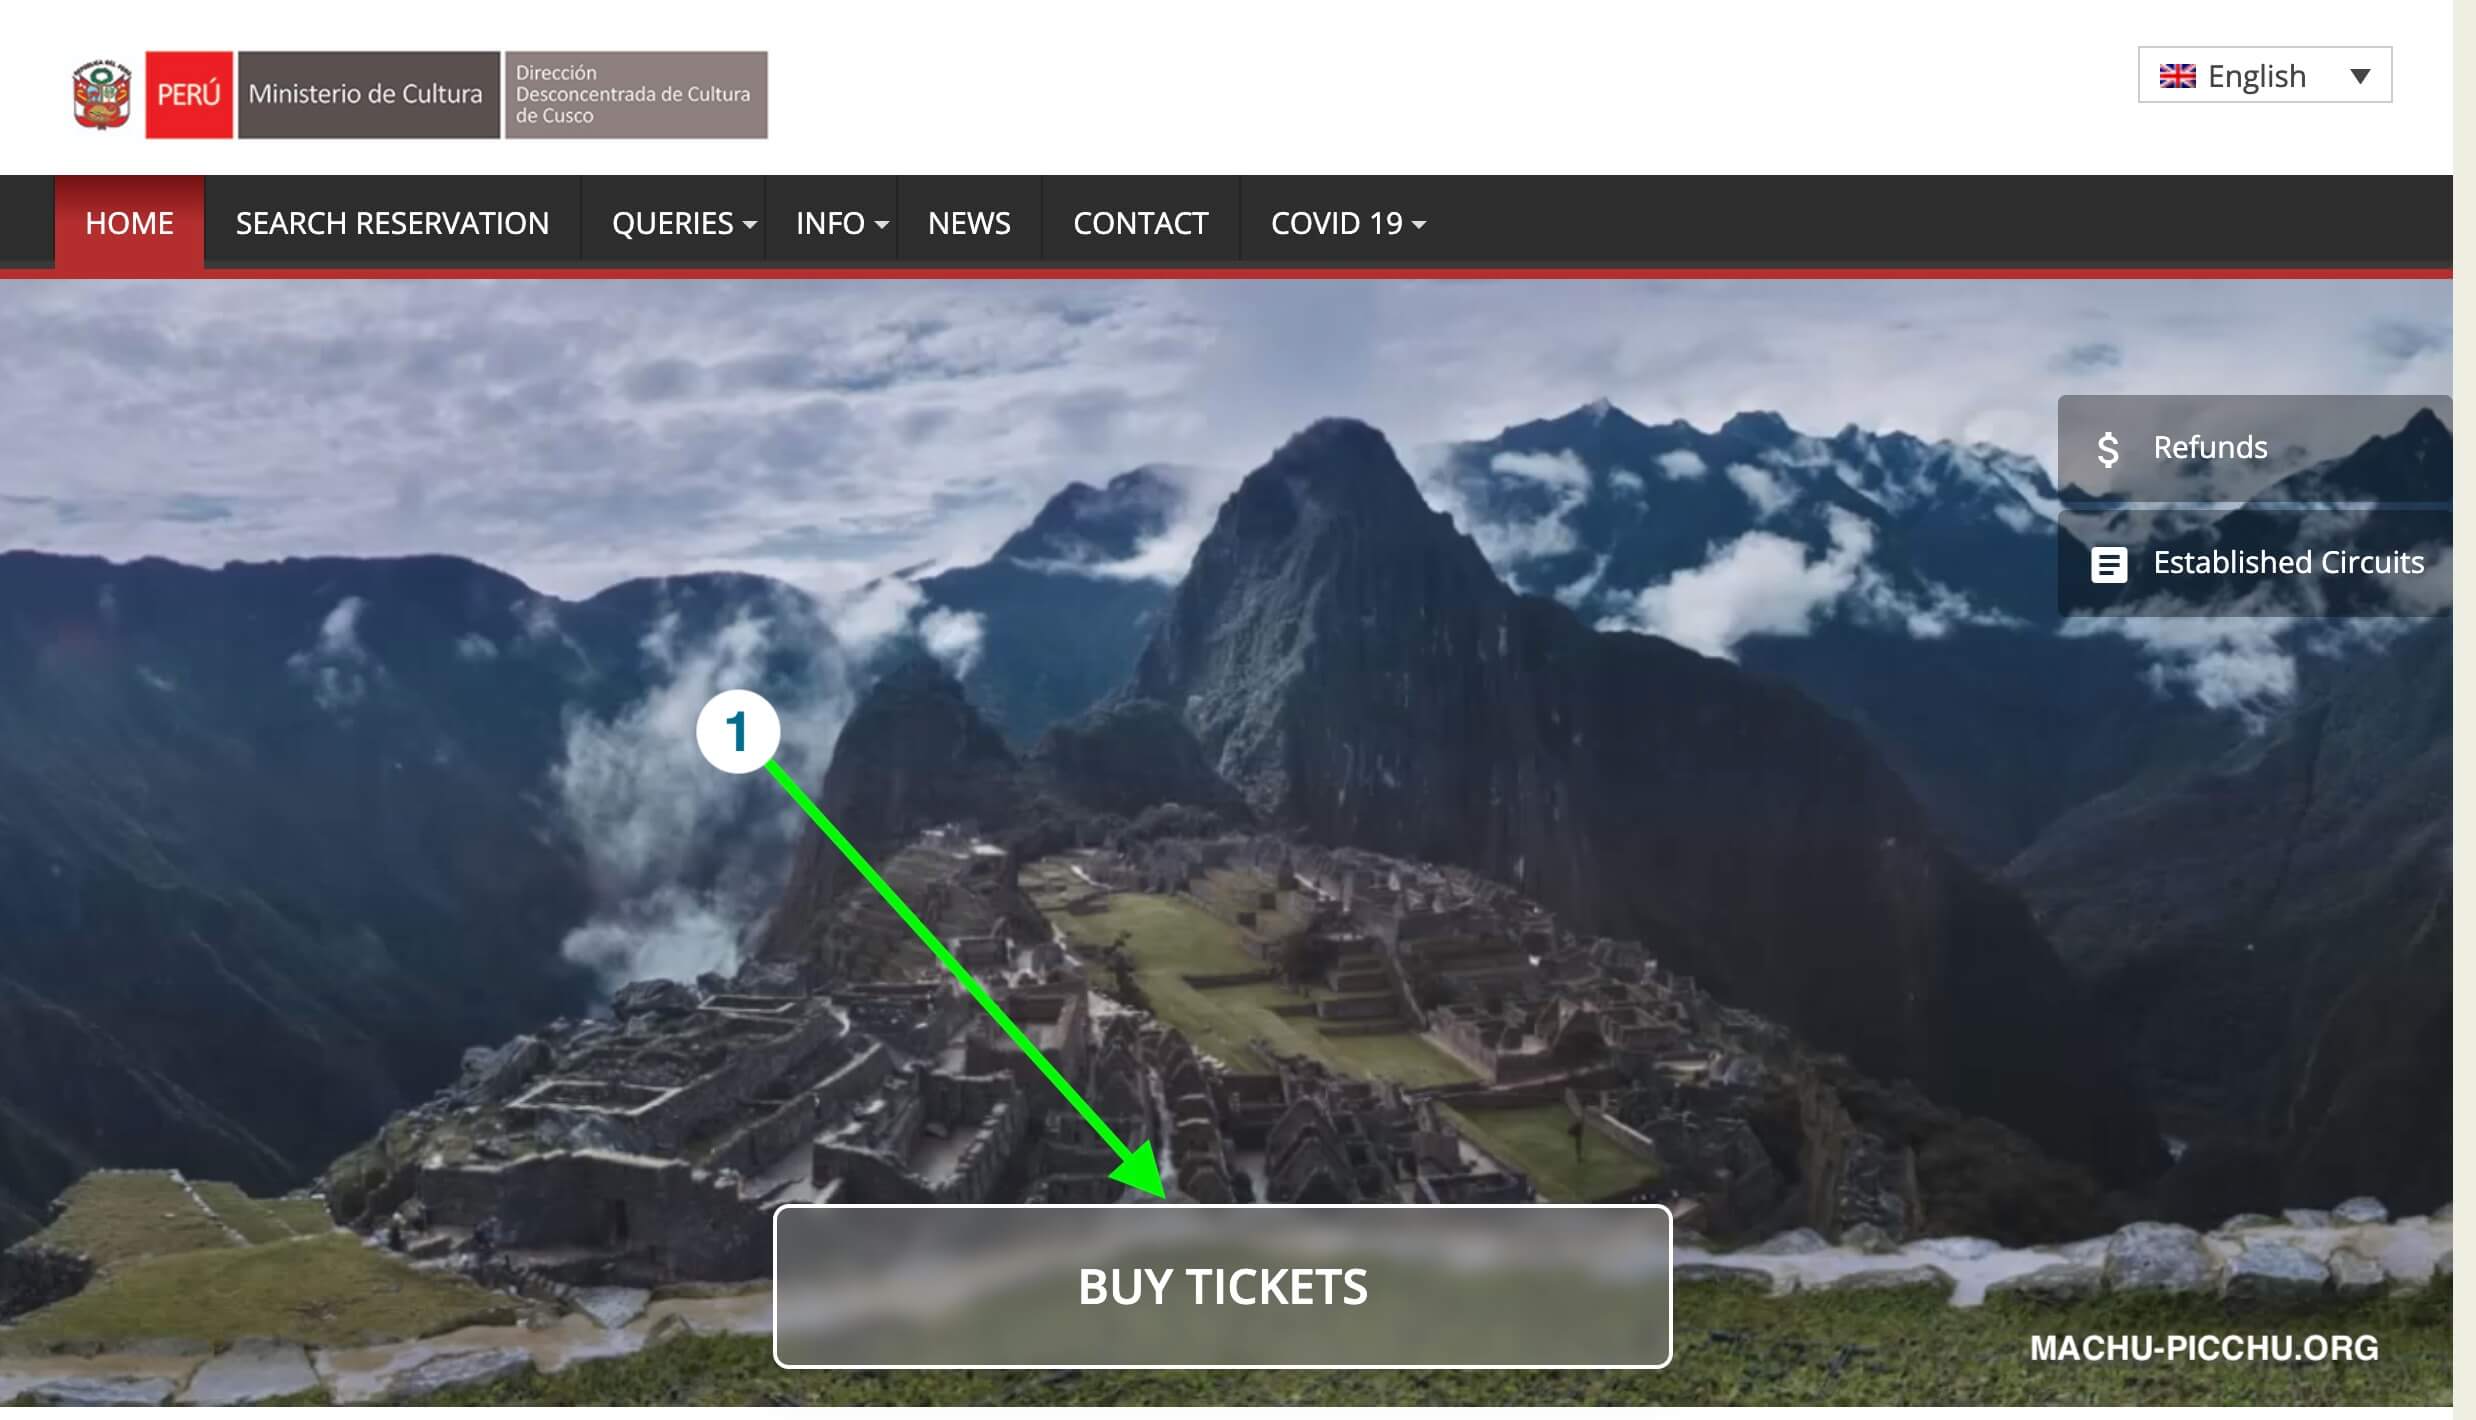 Cómo comprar boletos de Machu Picchu - Paso 1